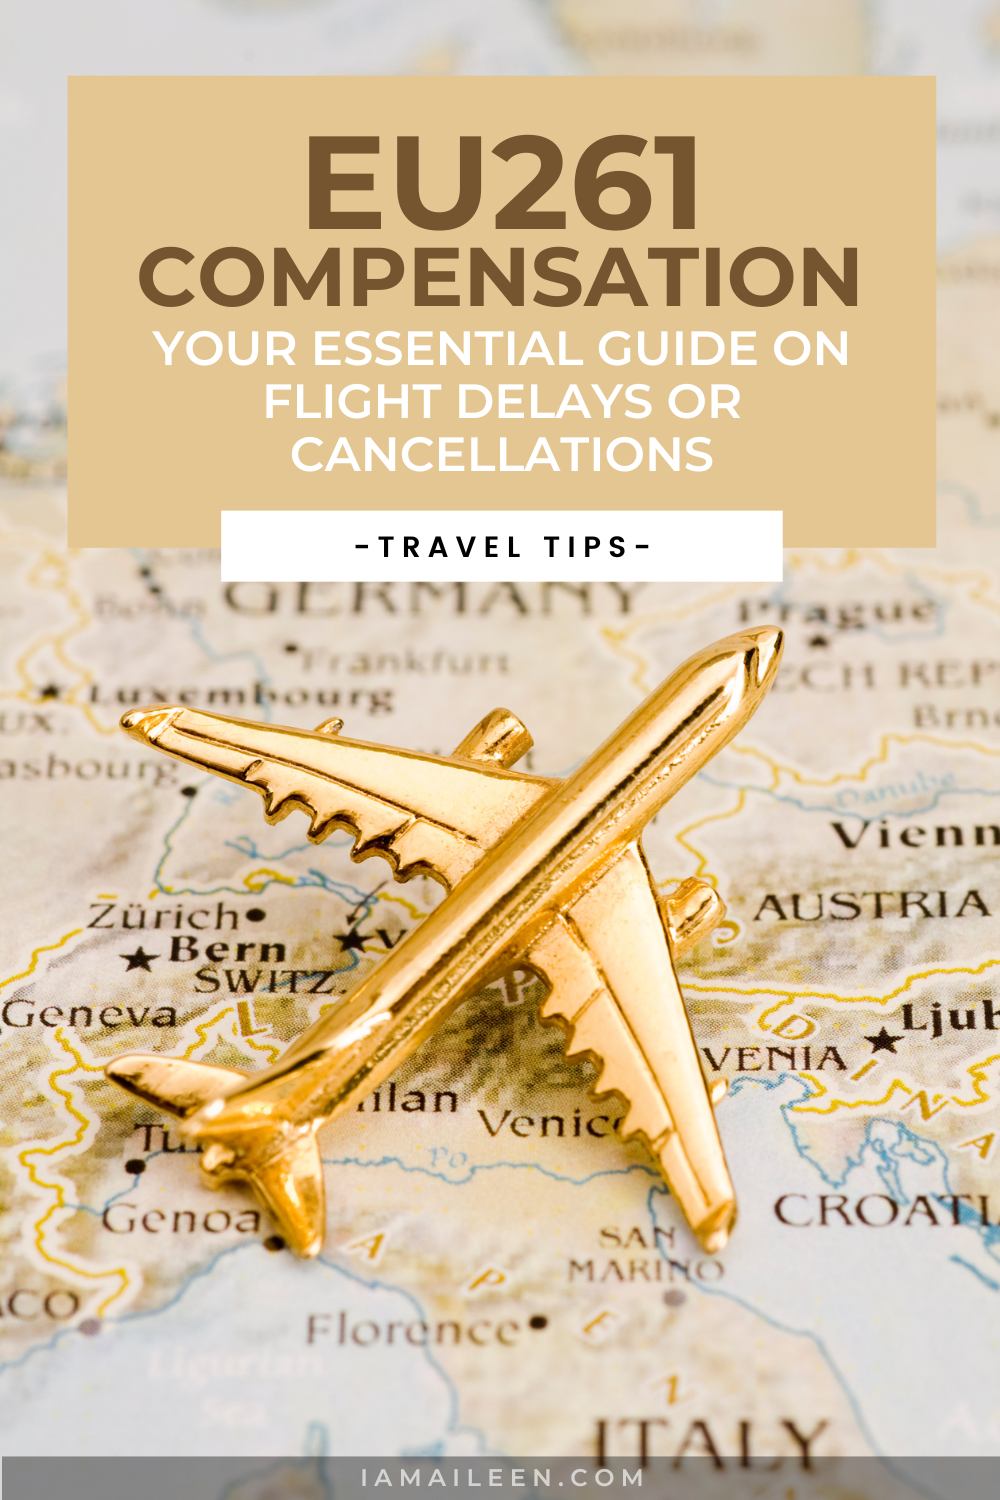 EC261 Compensation Guide